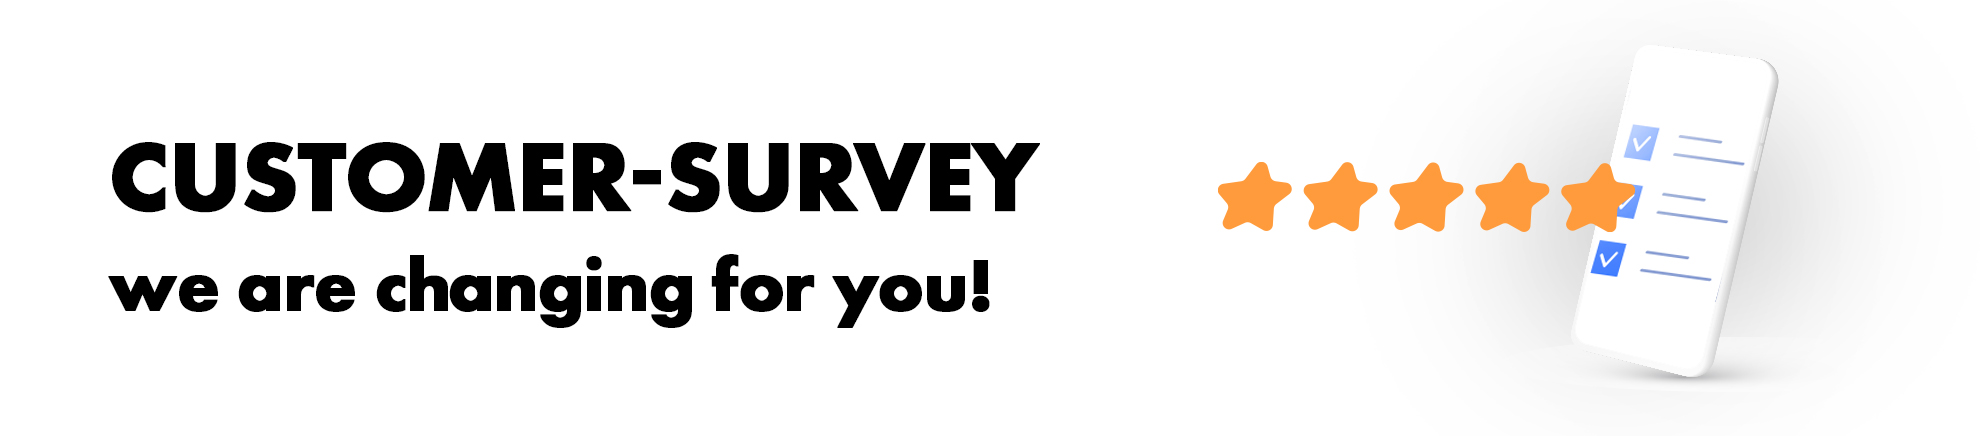 Customer Survey HEADER